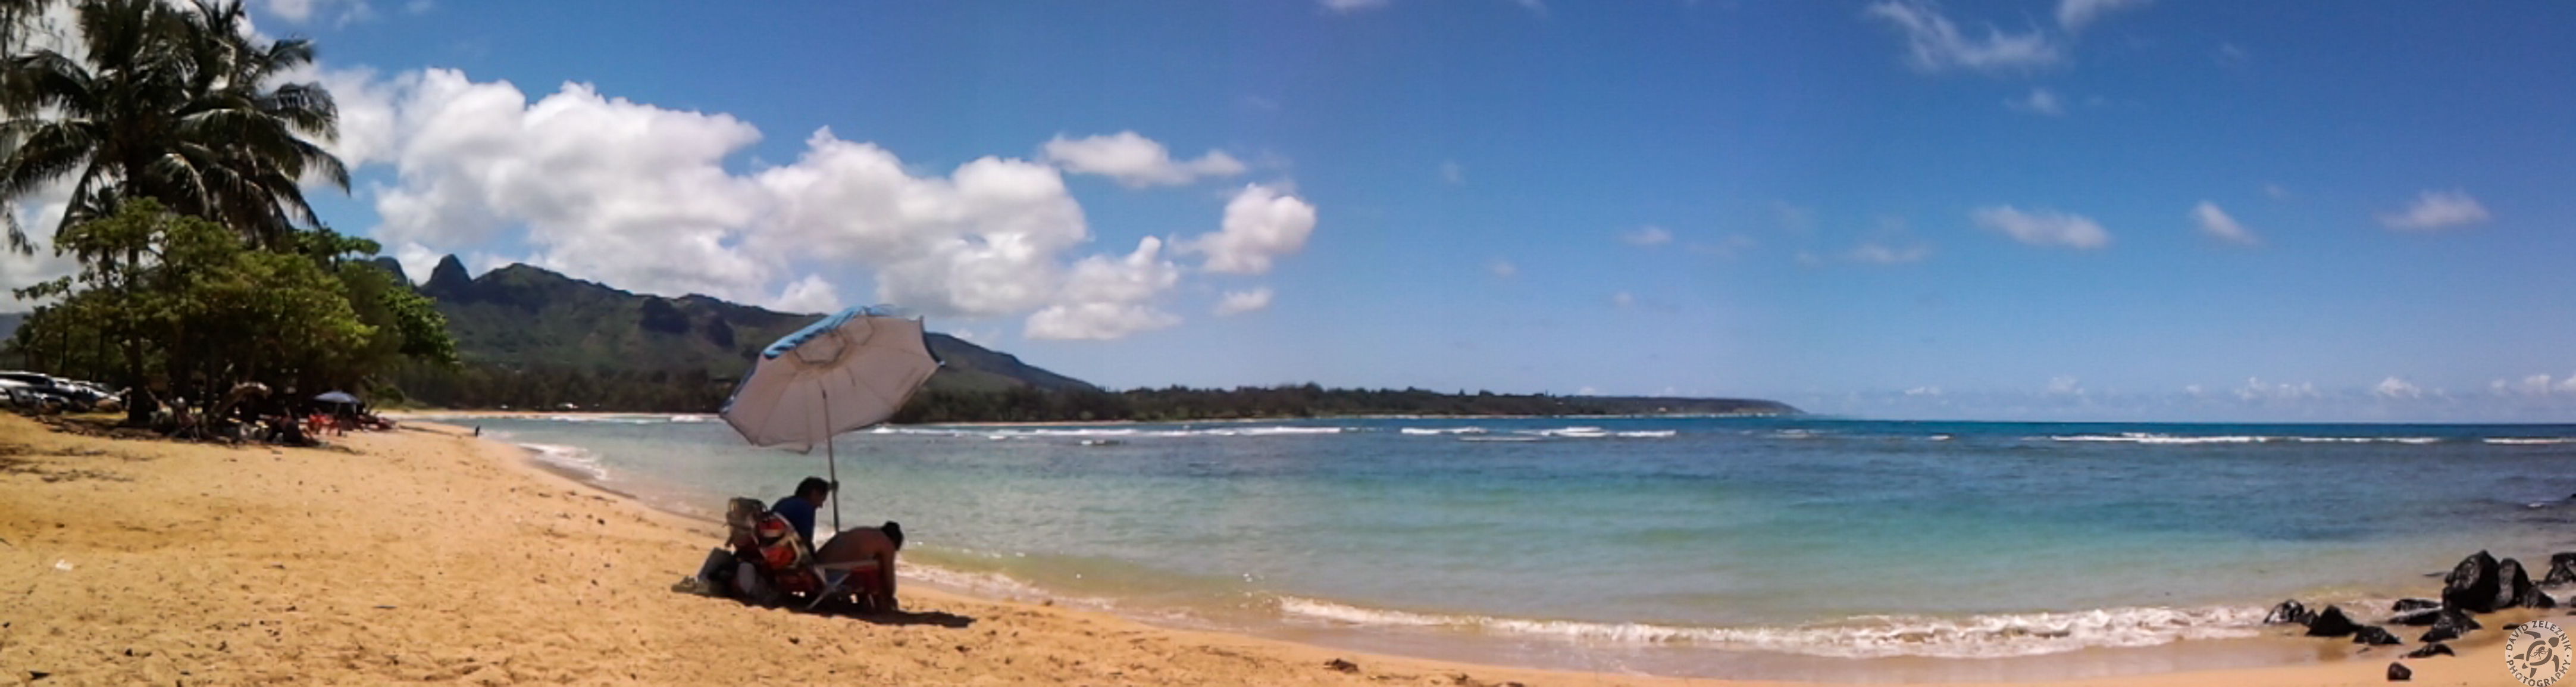 Kauai2015-079